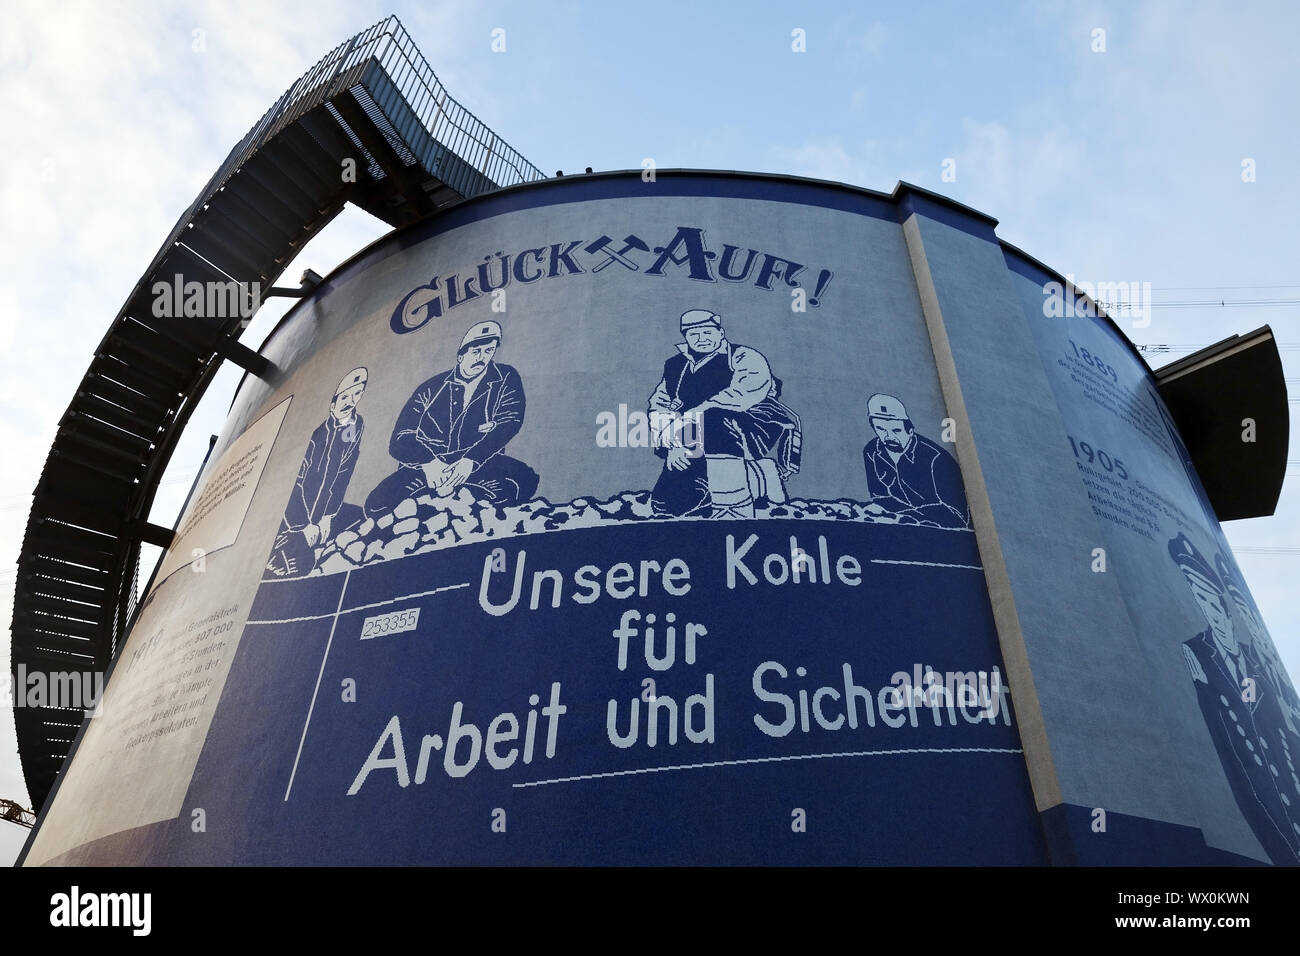 Oeuvre d'art sur le digesteur sur l'ancienne usine de traitement des eaux usées, l'Emscher art, Herne, Allemagne Europe Banque D'Images